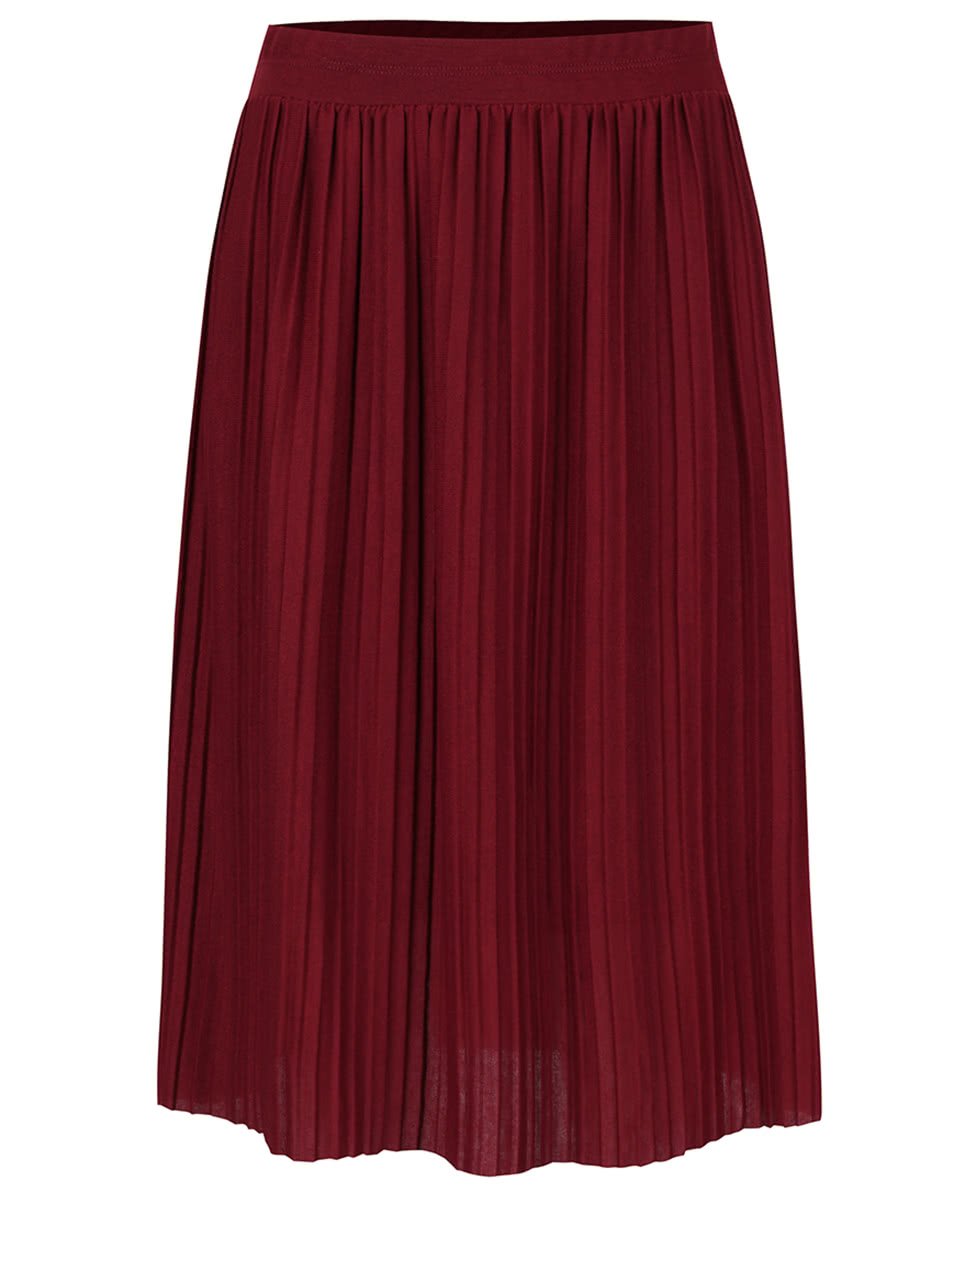 Vínová plisovaná sukně Alchymi Anya